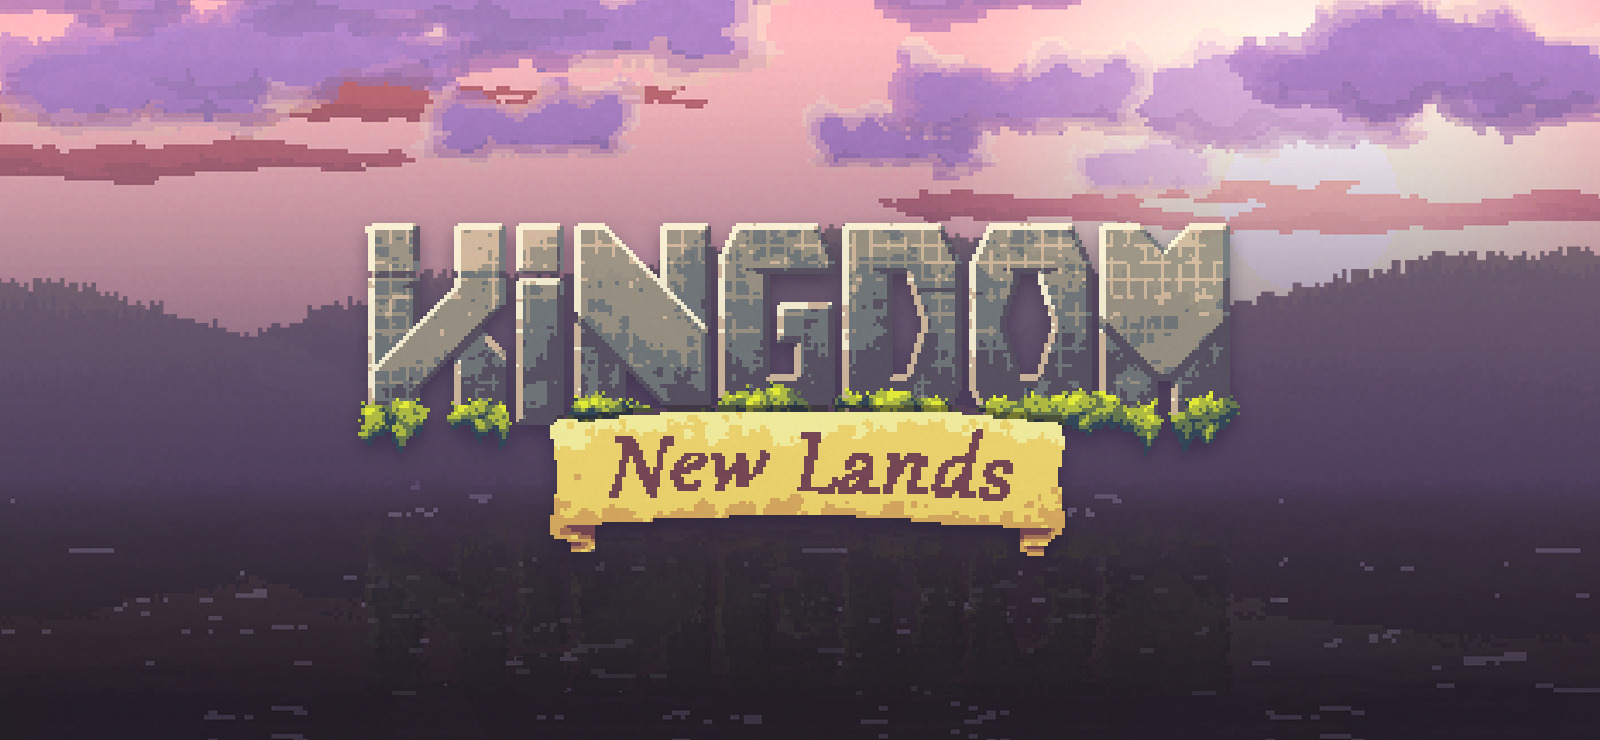 New lands 1. Kingdom_New_Lands_v1.2.8. Игра Kingdom New Lands. Kingdom New Lands 2. Kingdom New Lands арты.